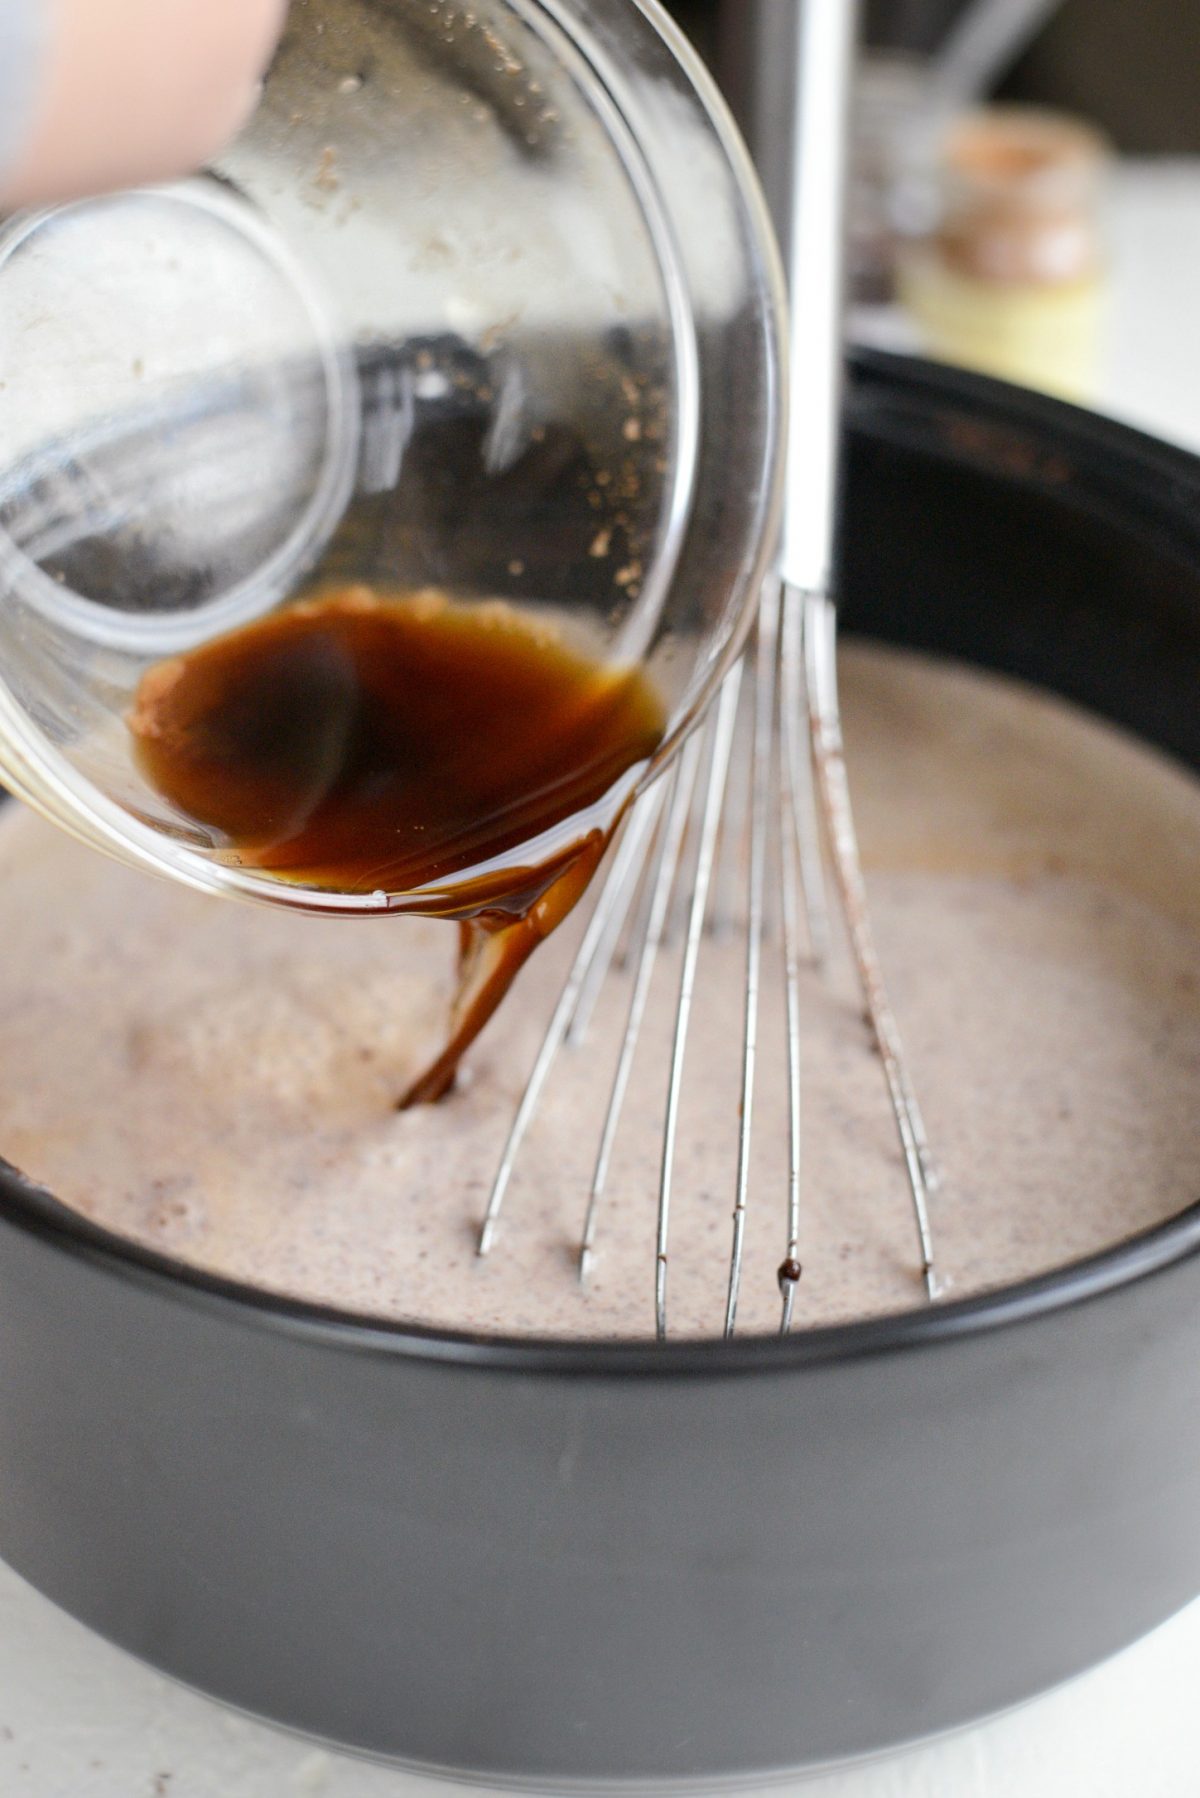 Add in the espresso mixture.